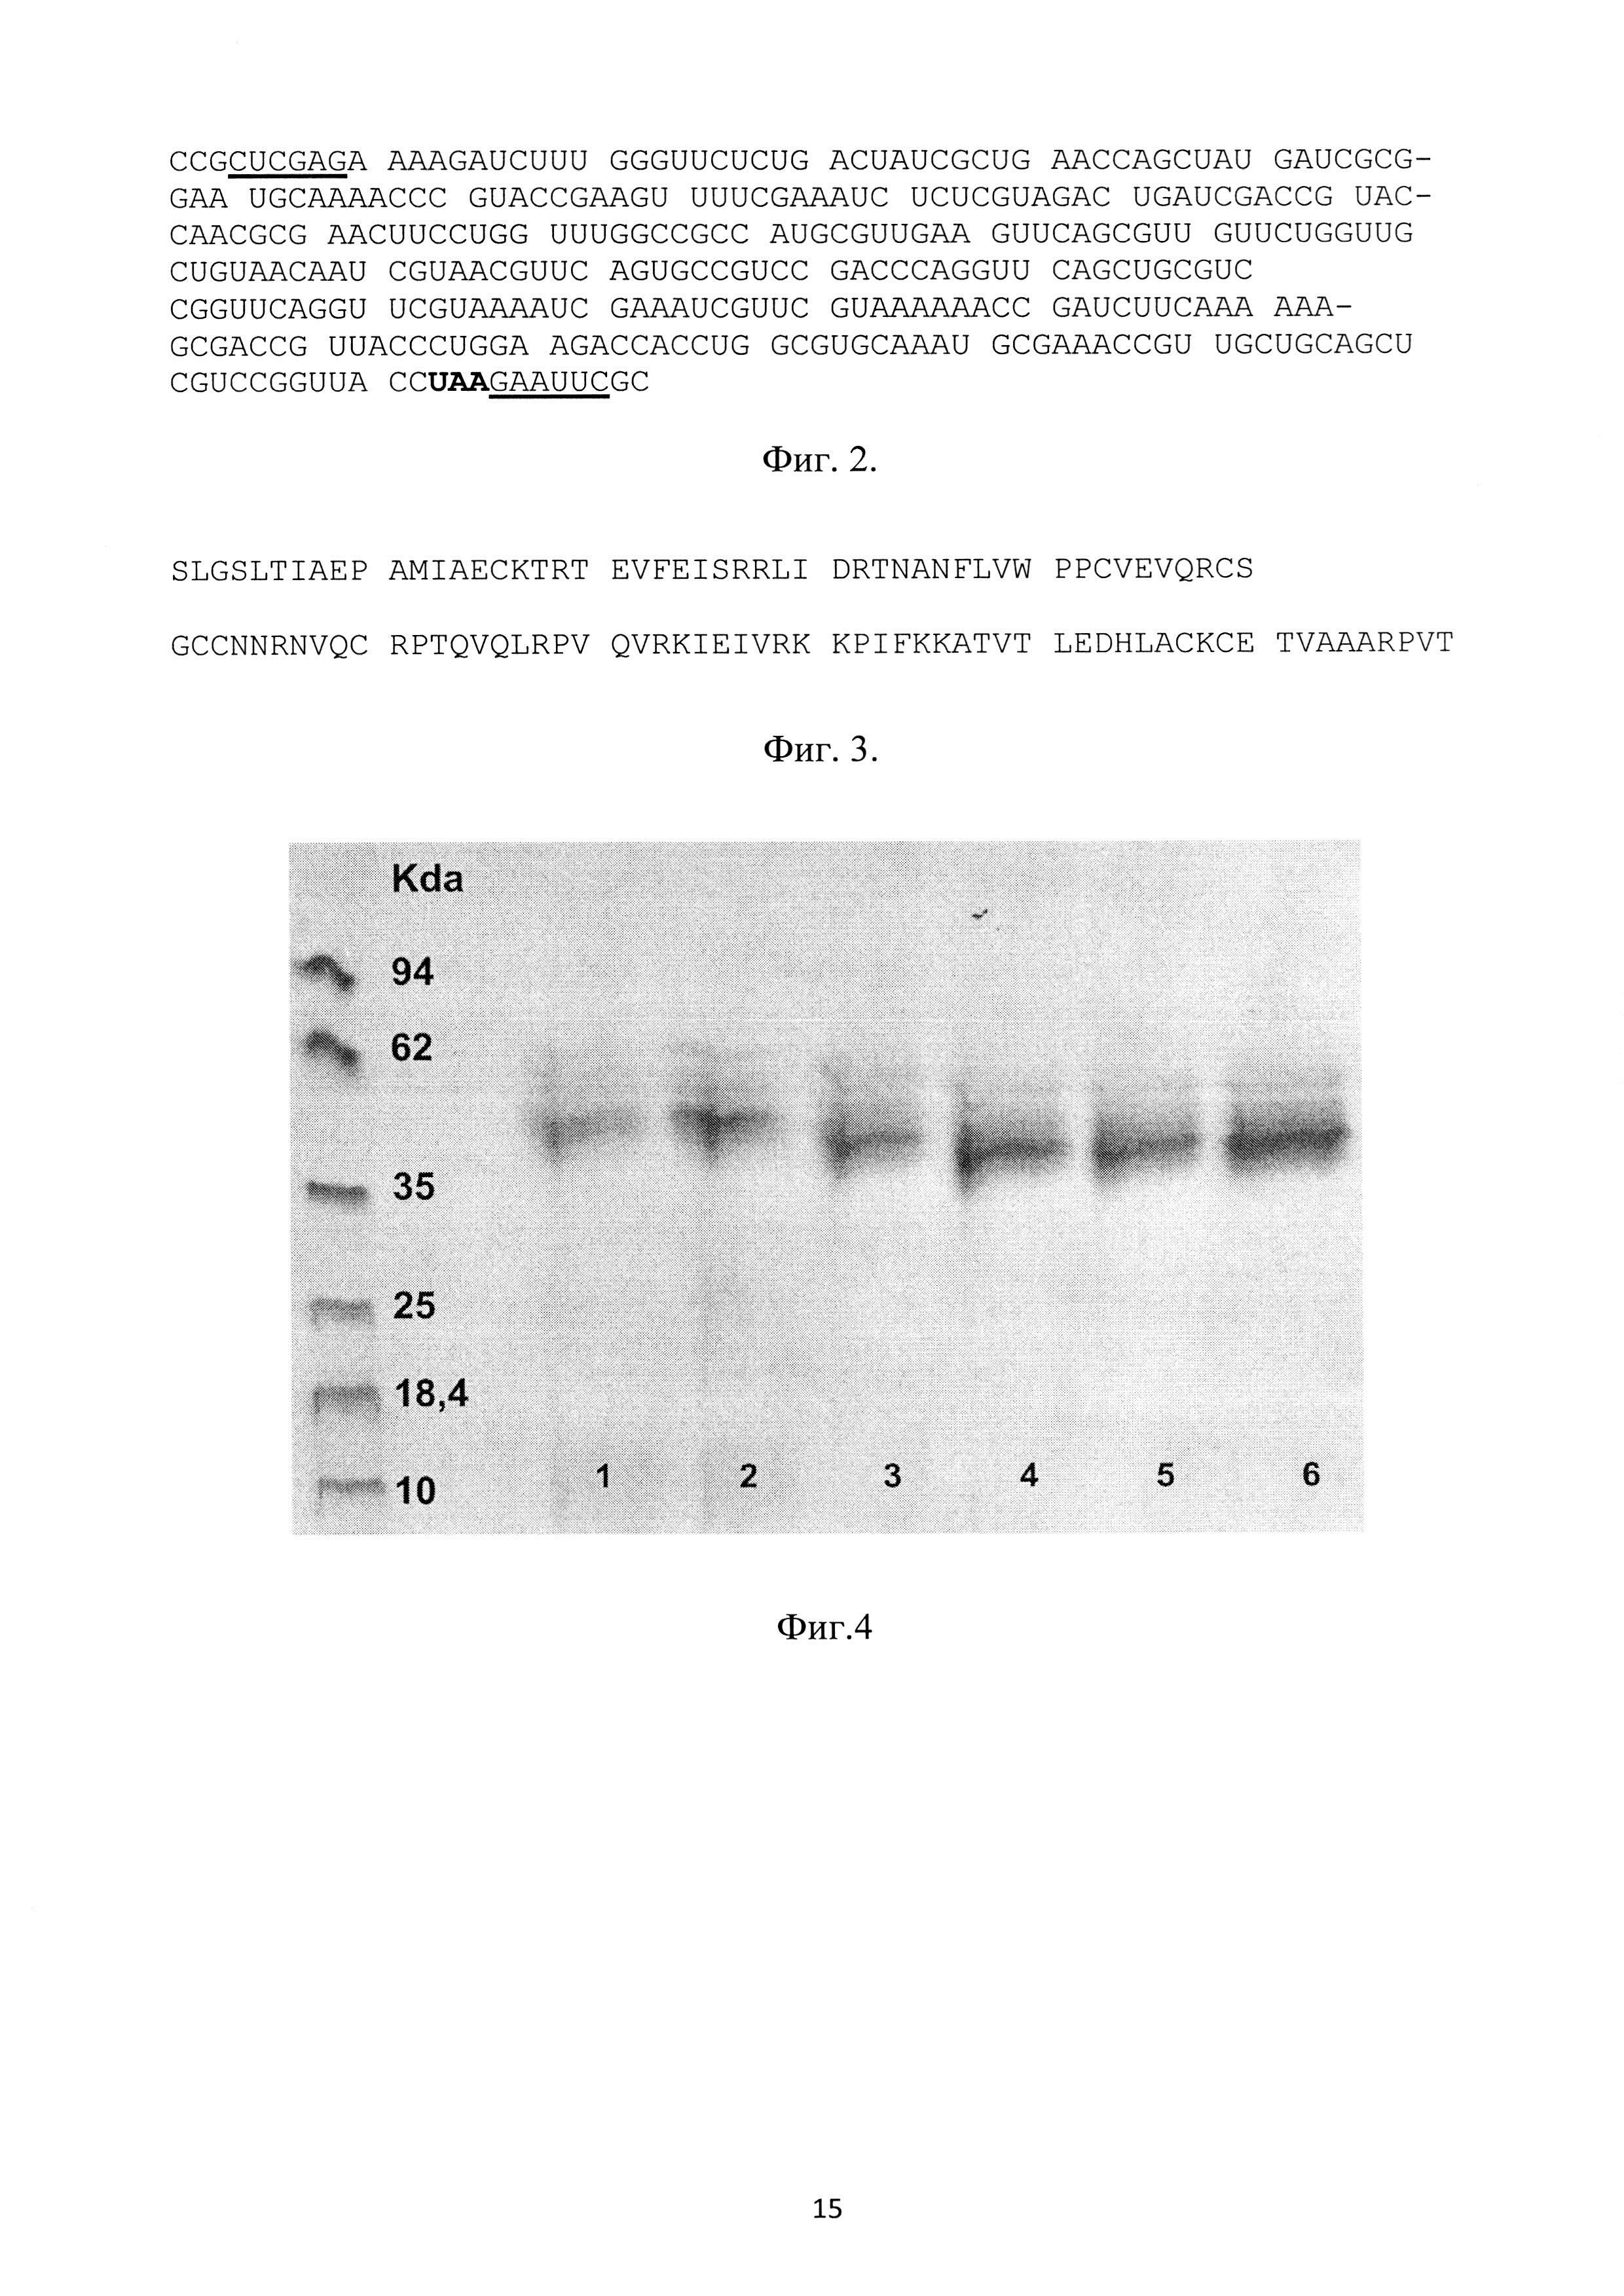 Рекомбинантная плазмидная ДНК pPDGFB, кодирующая полипептид со свойствами фактора роста тромбоцитов-ВВ человека, и рекомбинантный штамм метилотрофных дрожжей Pichia pastoris - продуцент полипептида со свойствами фактора роста тромбоцитов-ВВ человека